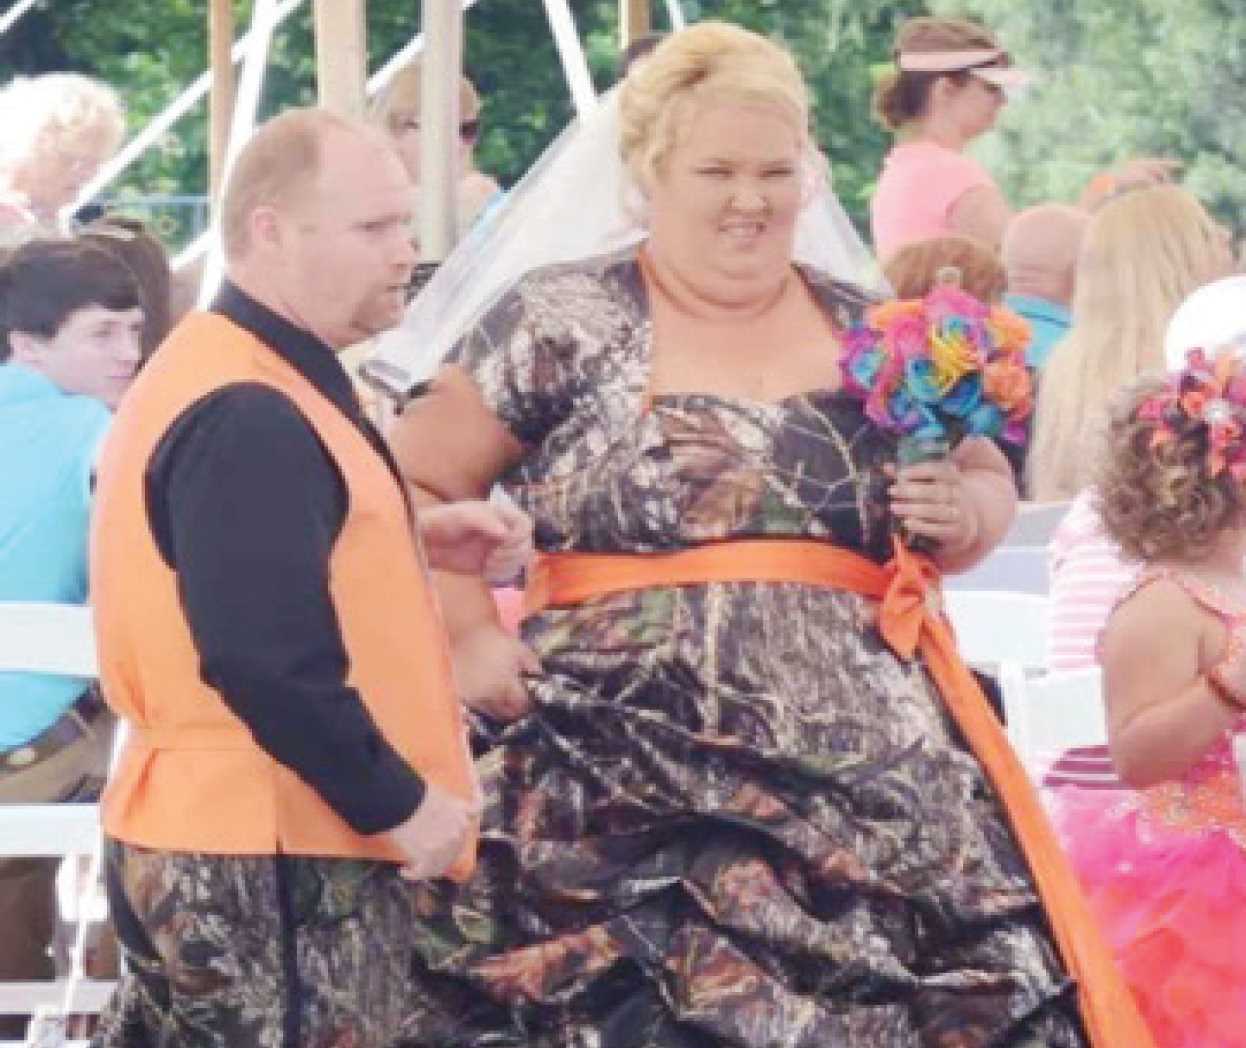 Los diez peores vestidos de novia que usaron las famosas - La Tarde